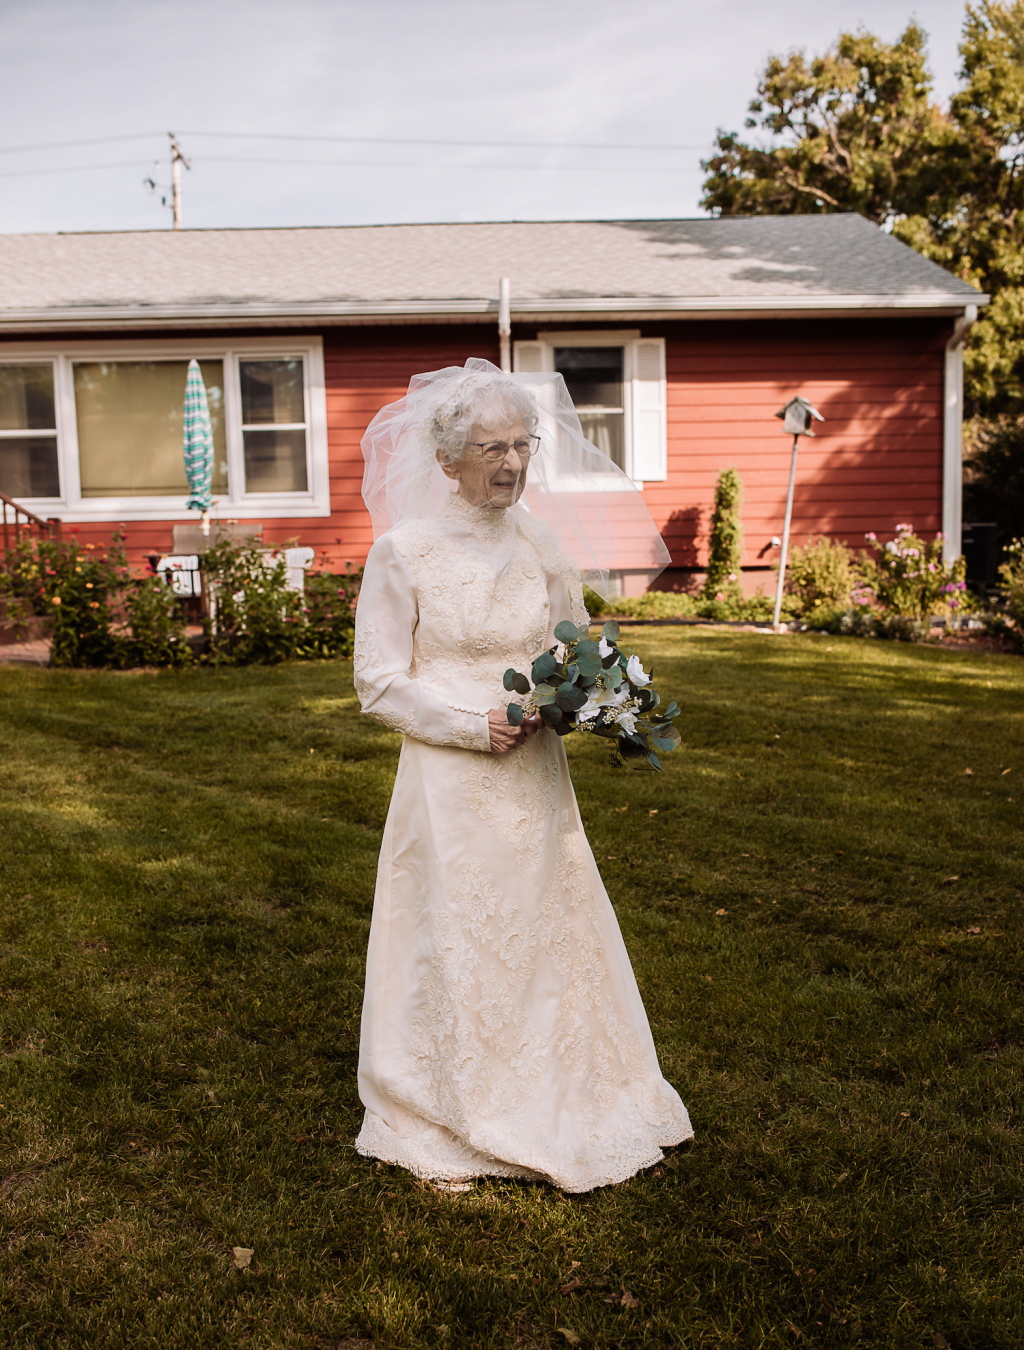 PhiLinh Wedding - Cô dâu Frances 97 tuổi trong chiếc váy cưới của những thập niên 40